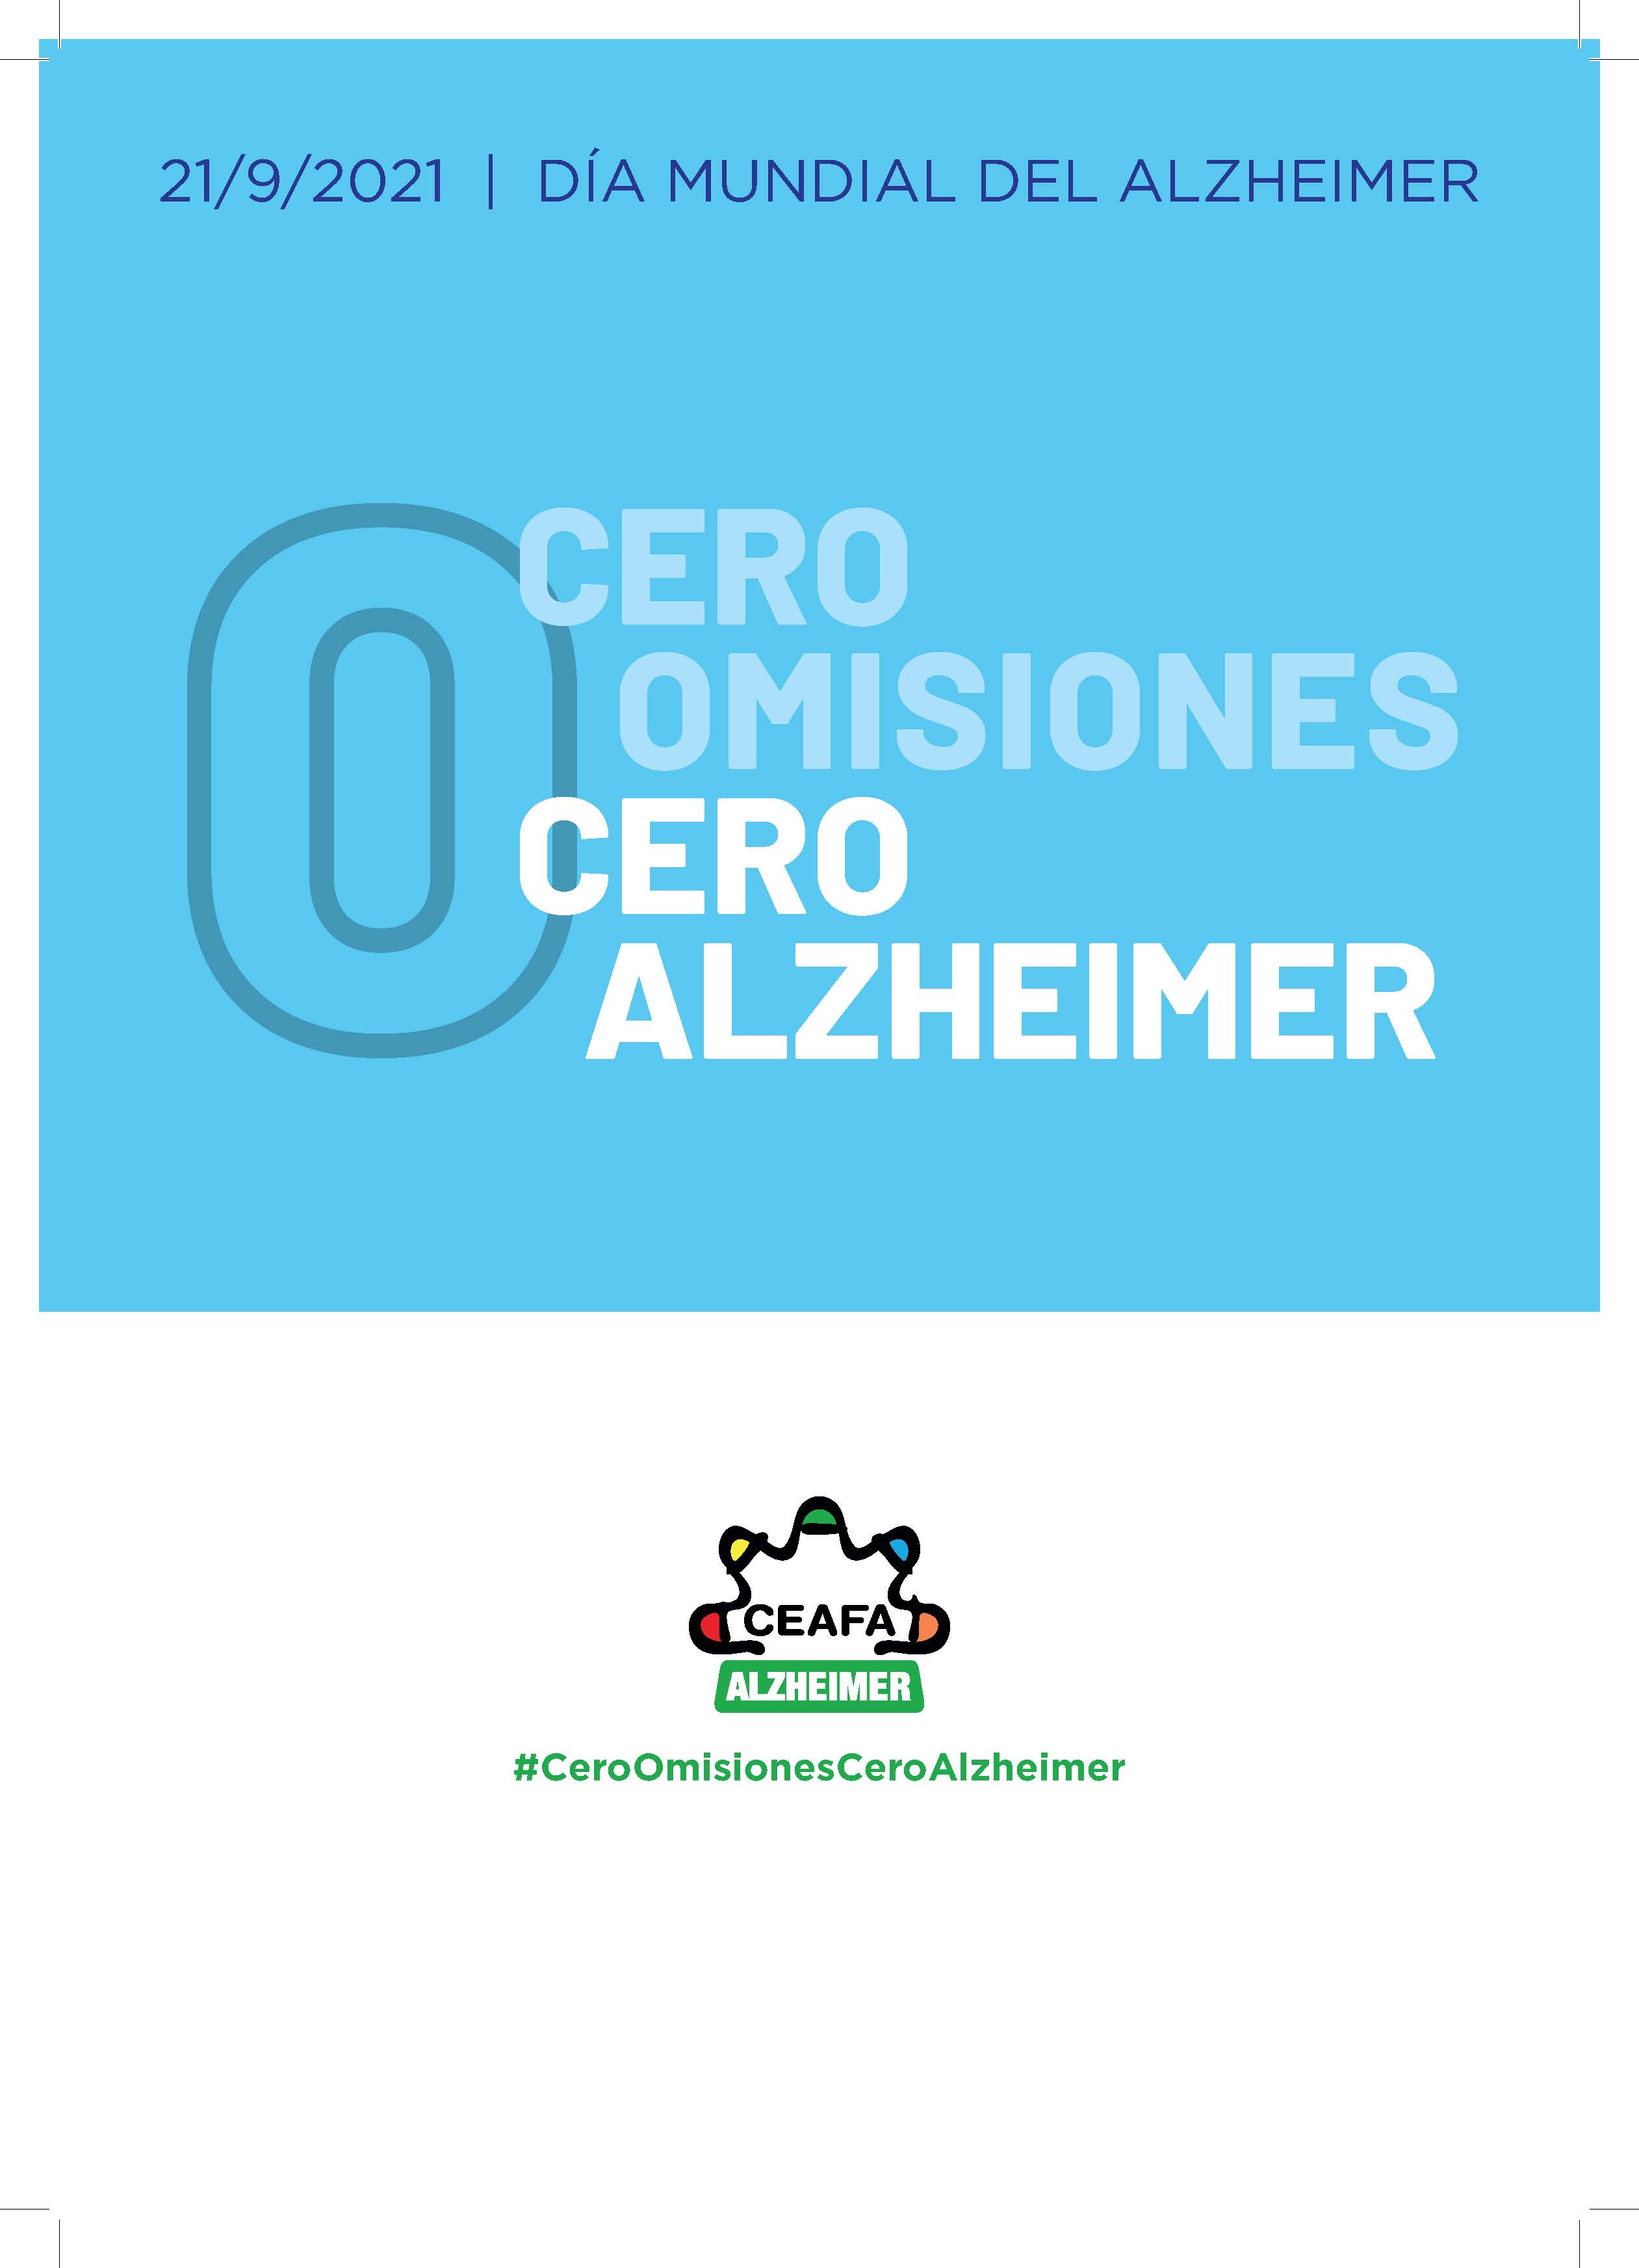 Día Mundial de Alzheimer 21 de Septiembre 2021